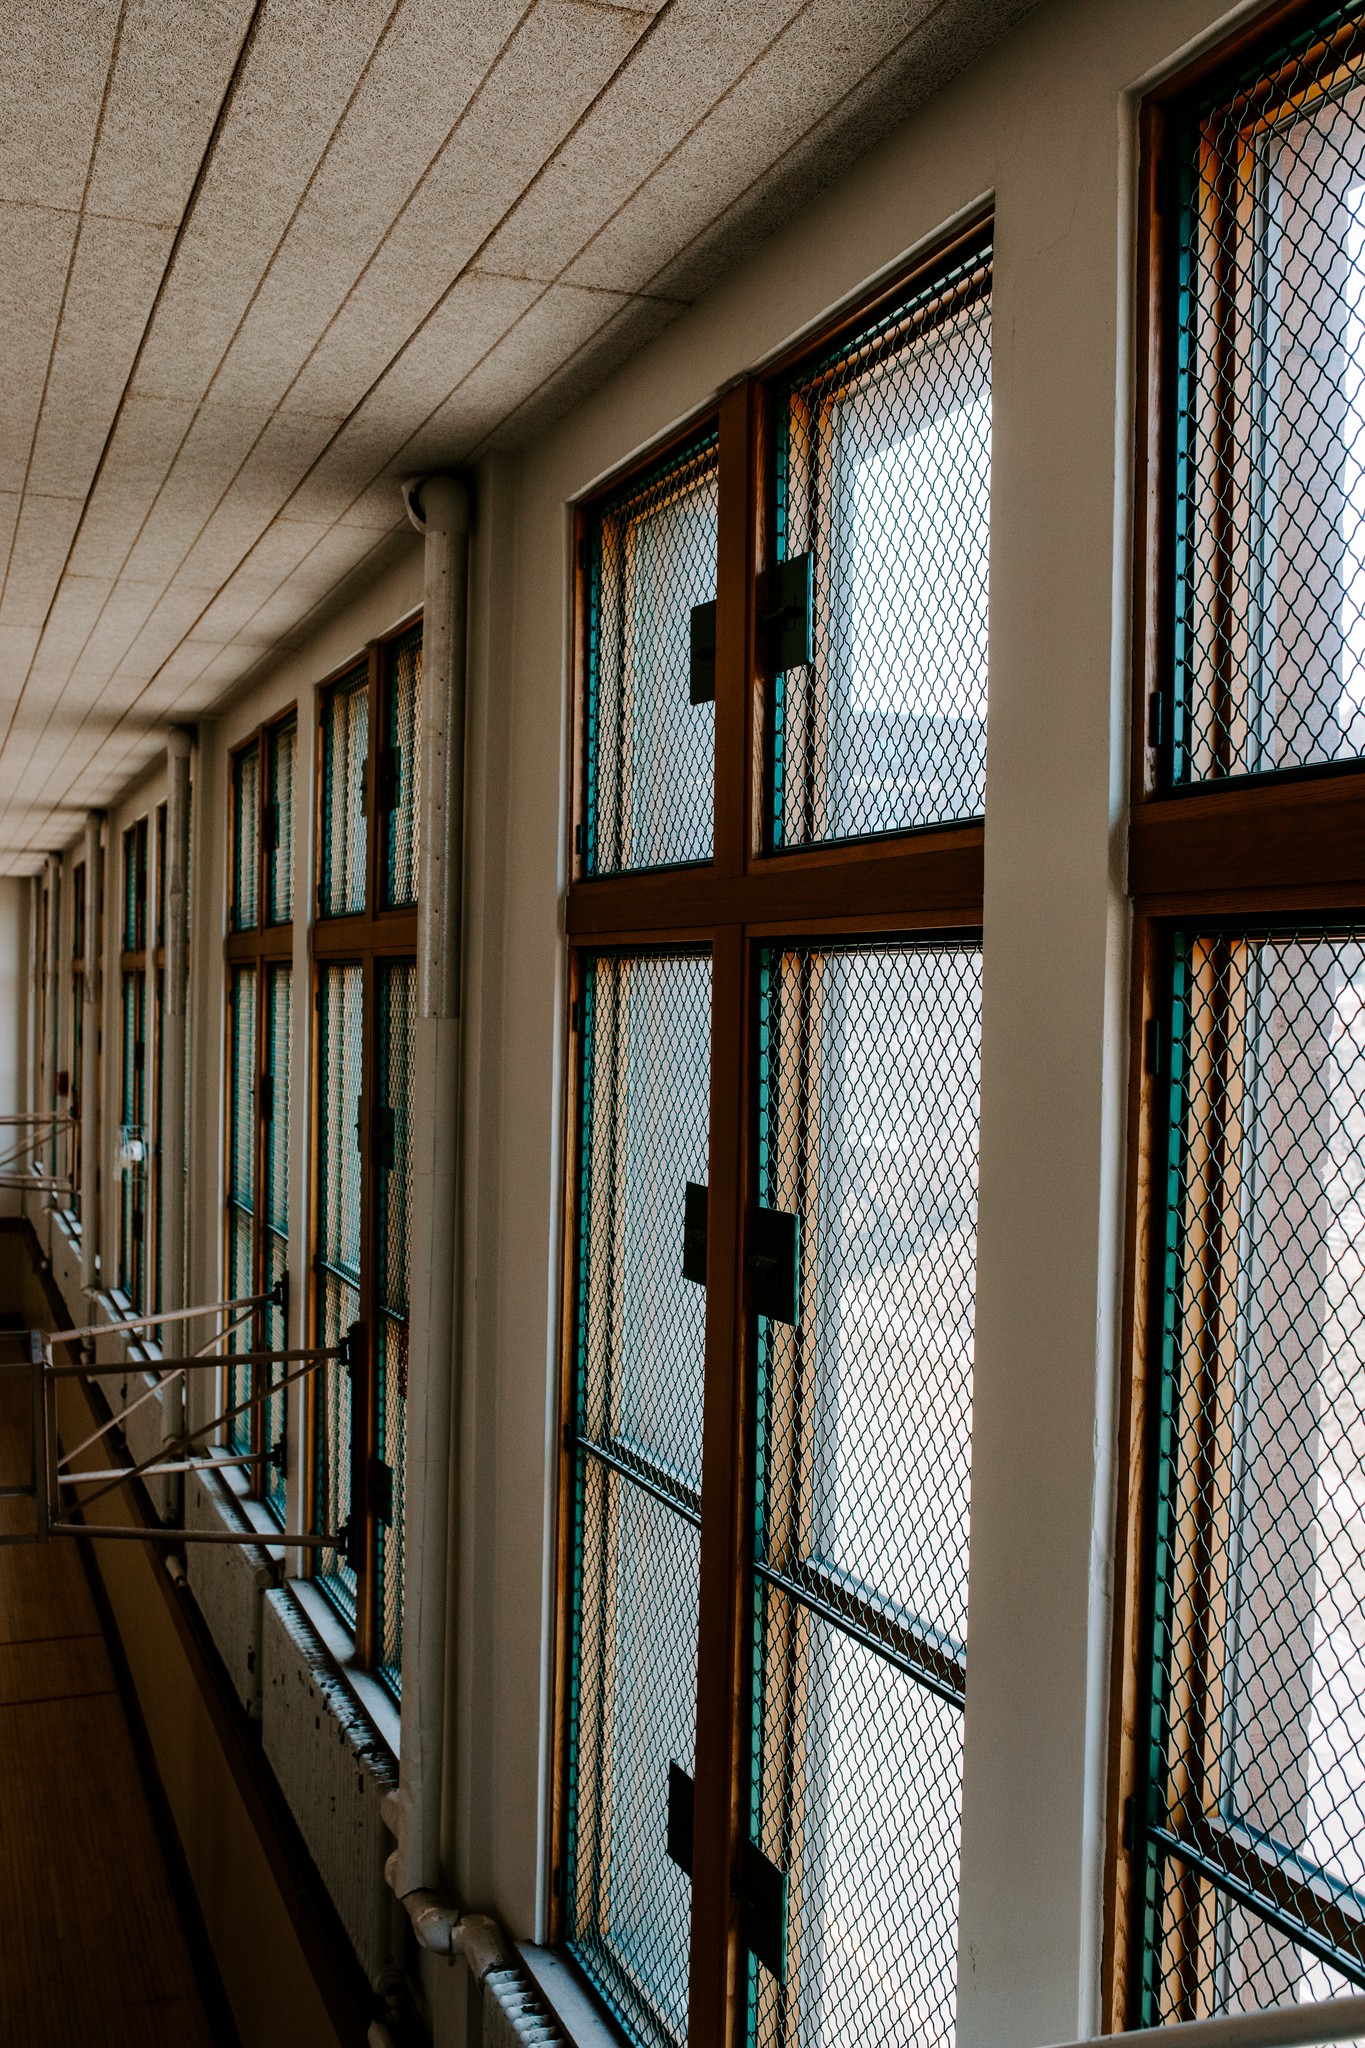 Zenith DCHS school original windows down a hallway